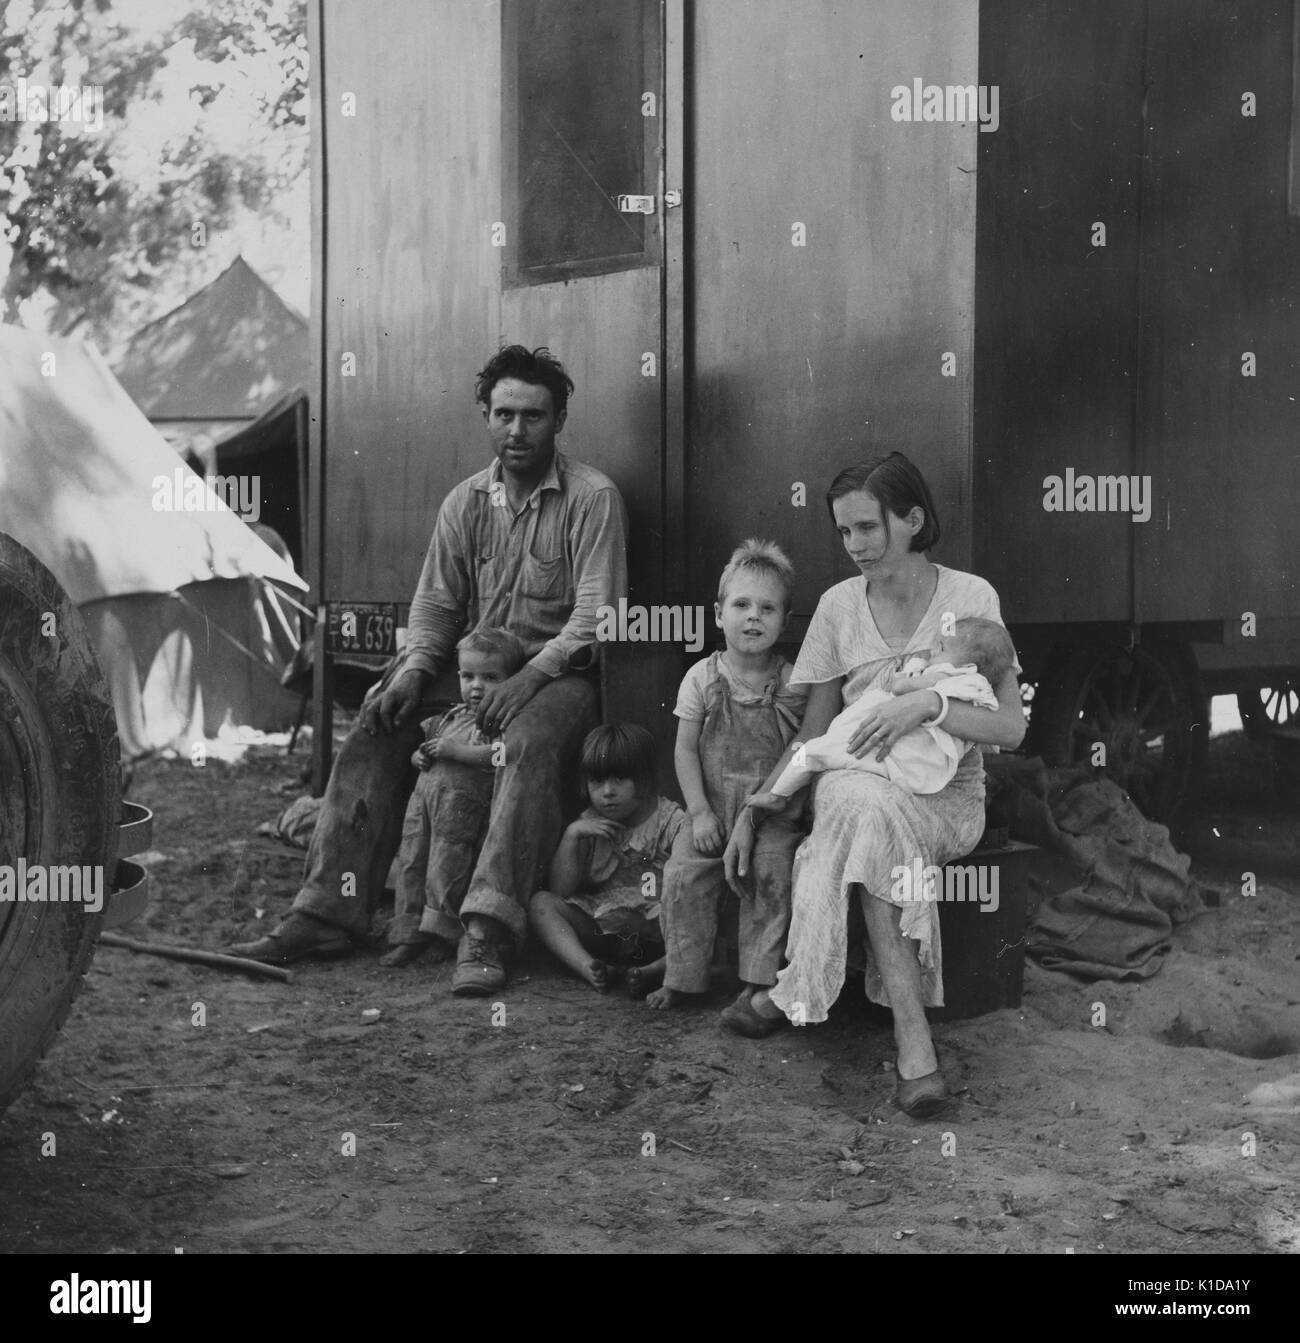 Un travailleur migrant, sa jeune femme et quatre enfants qui se reposent en dehors de leur logement temporaire, situé dans un camp de migrants, Marysville, Californie, 1935. De la bibliothèque publique de New York. Banque D'Images